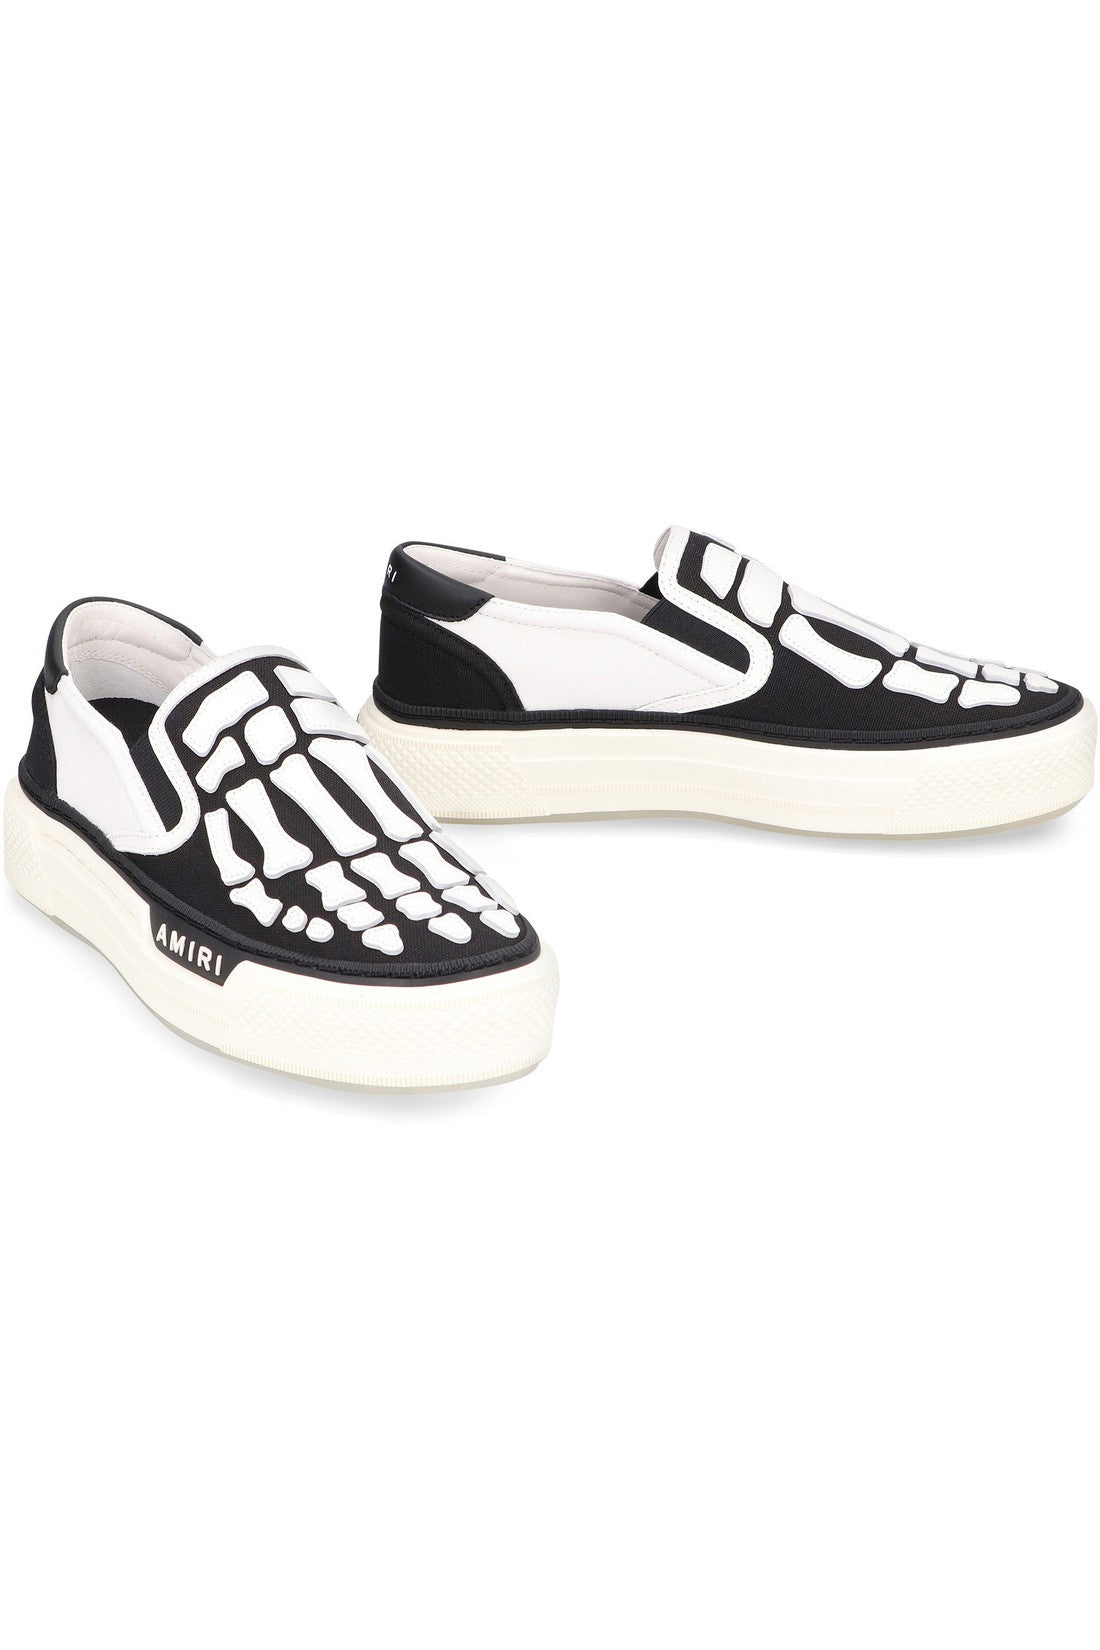 AMIRI-OUTLET-SALE-Skel Top slip-on sneakers-ARCHIVIST